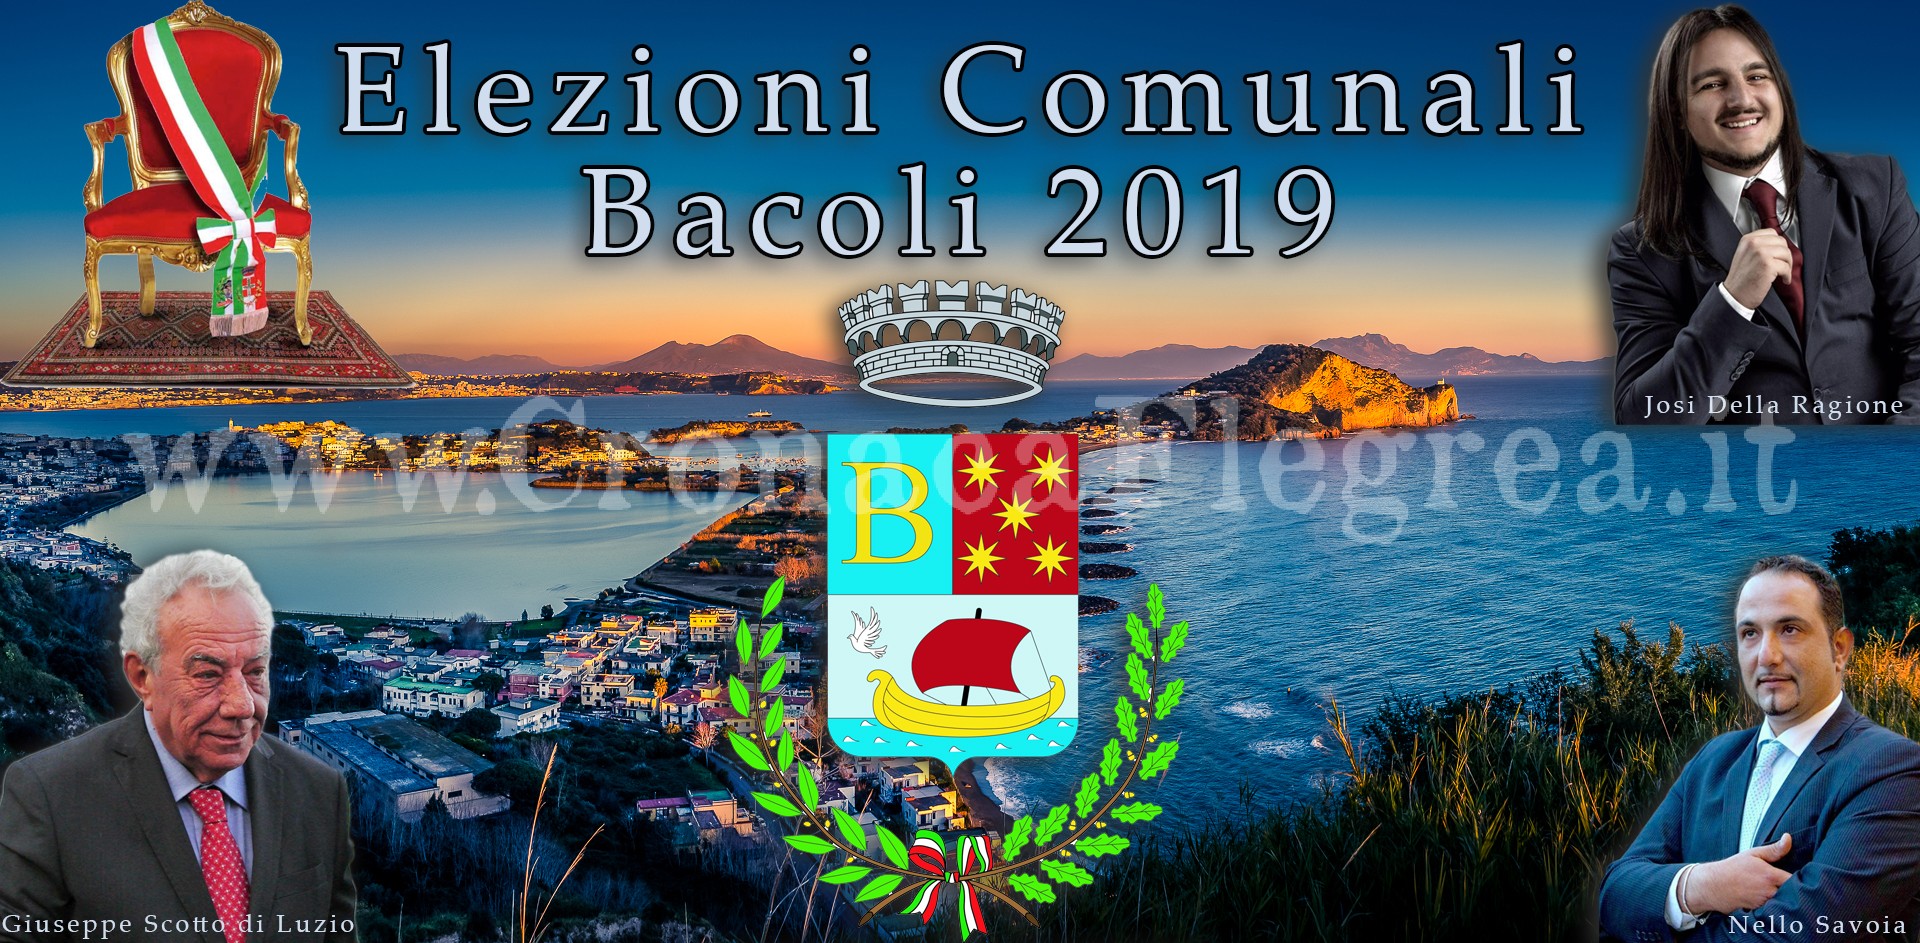 Elezioni a Bacoli: su Cronaca Flegrea lo spoglio in diretta per l’elezione del sindaco